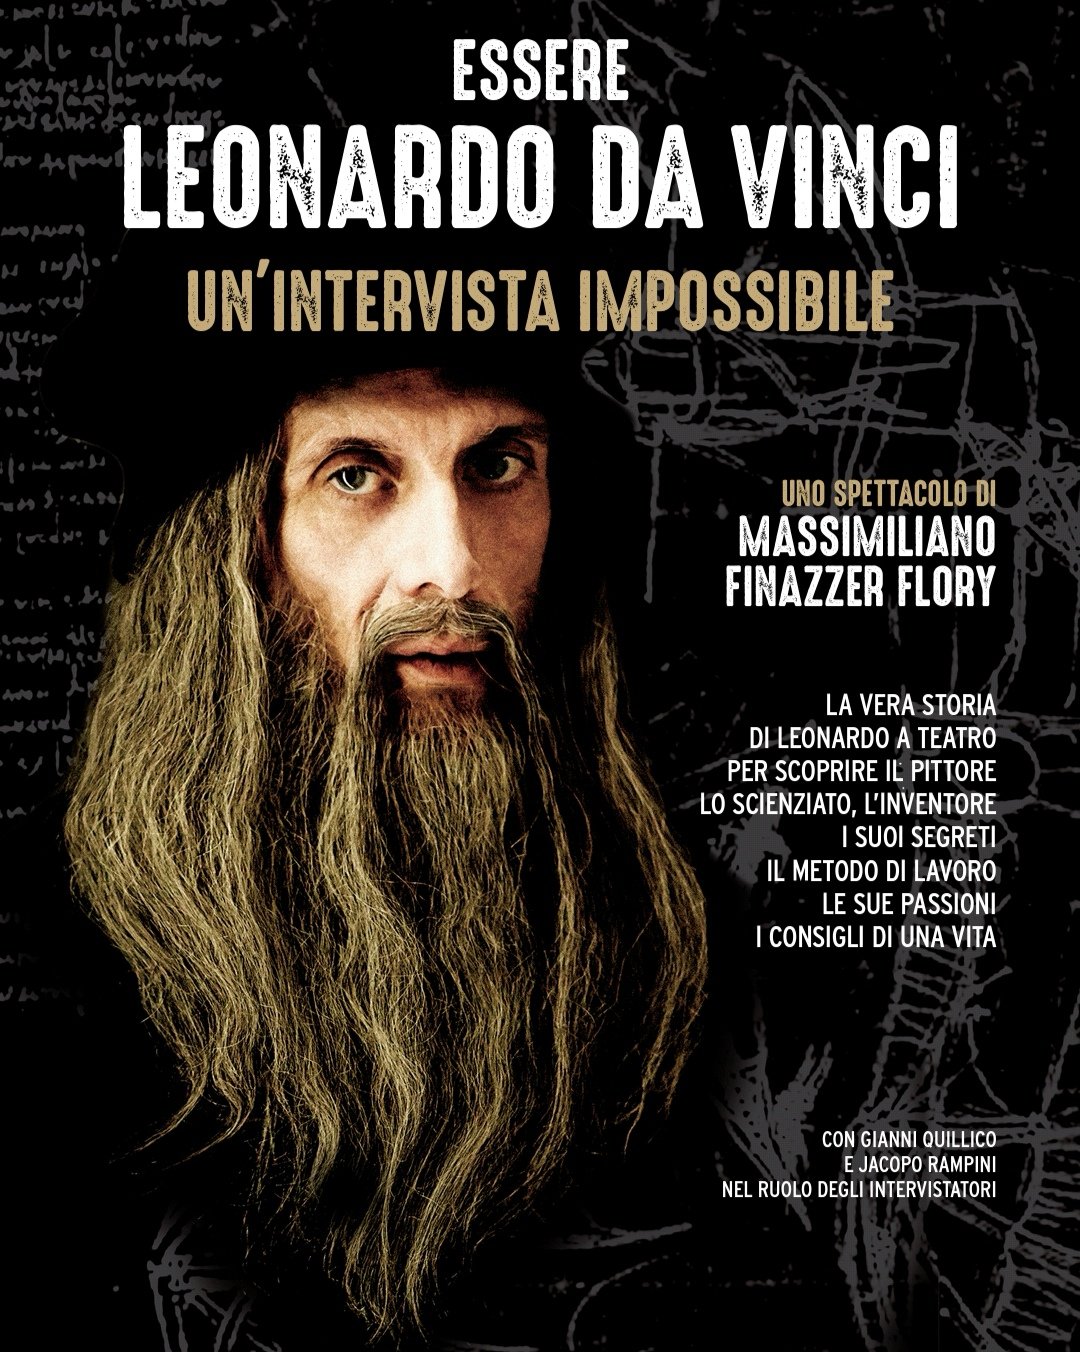 Essere Leonardo da Vinci un’intervista impossibile